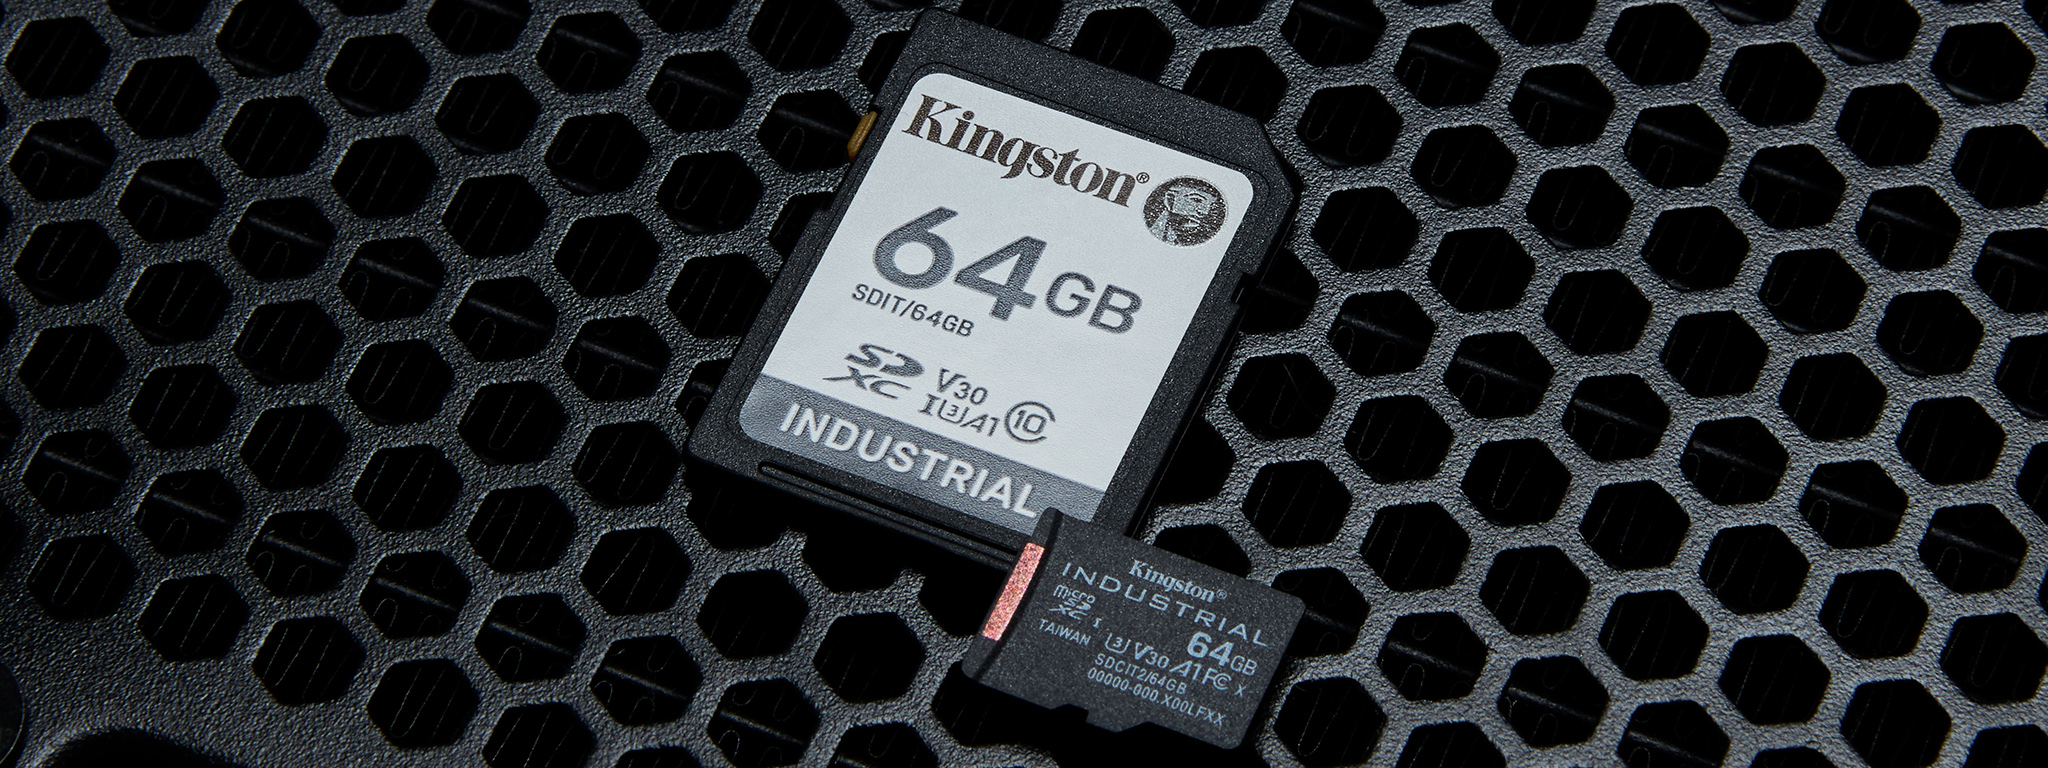 Un par de tarjetas microSD Industrial de 64 GB de Kingston apoyadas sobre una superficie metálica desgastada